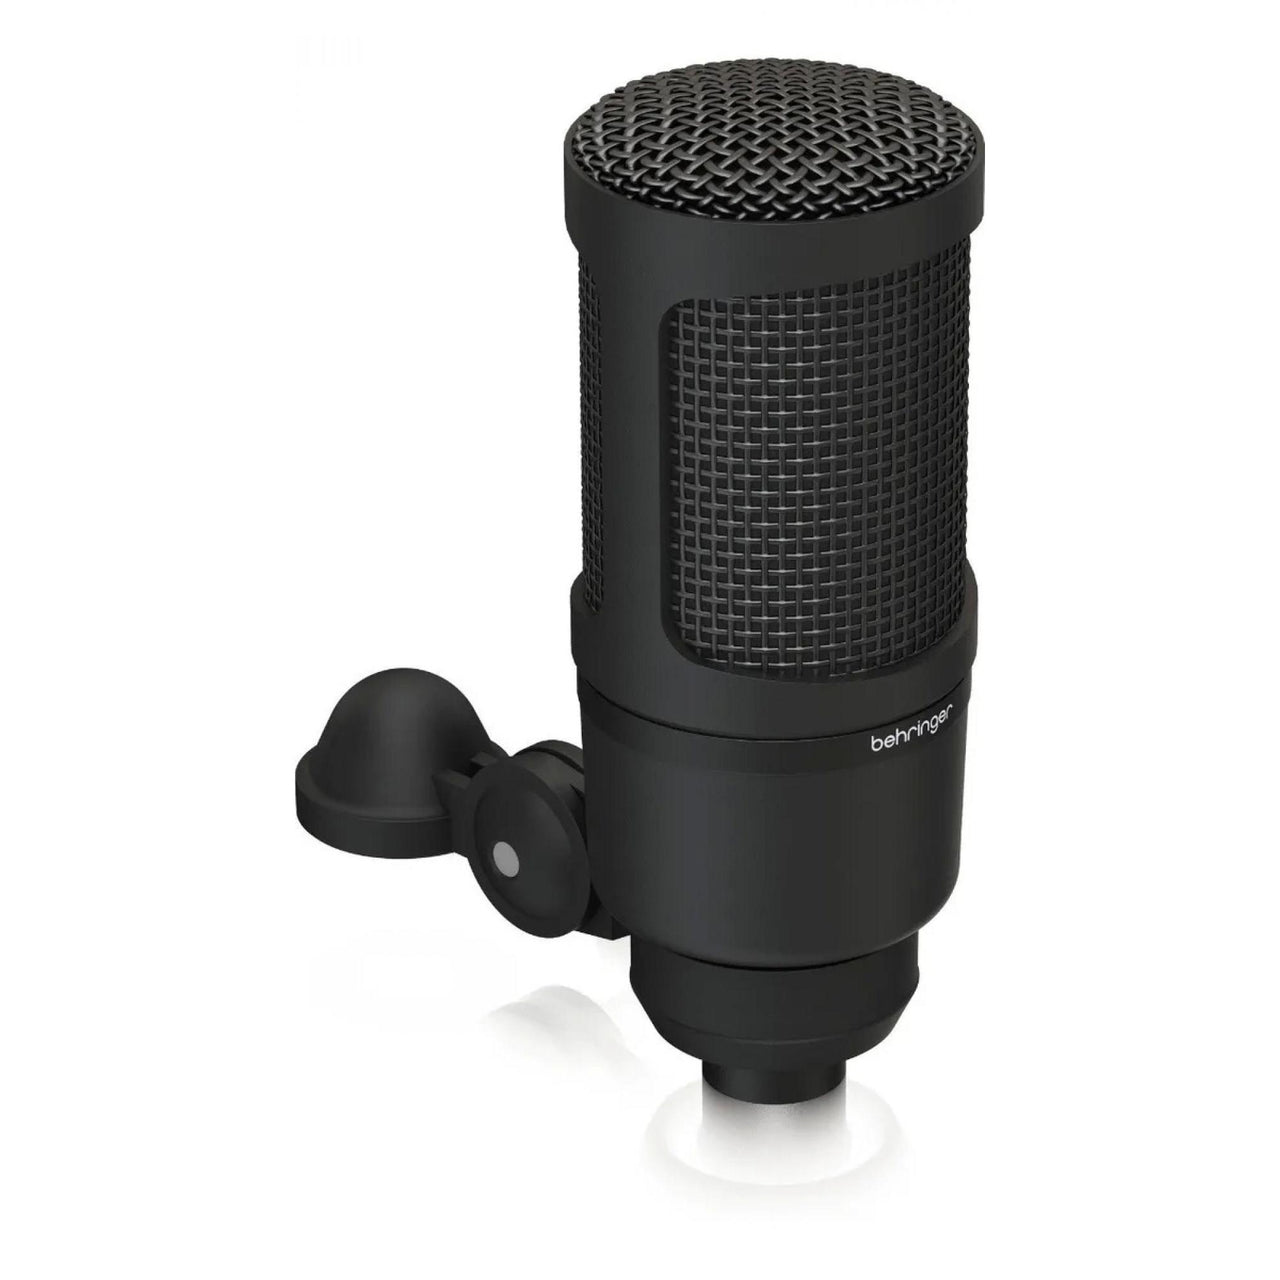 Microfono Behringer Mod. Bx2020